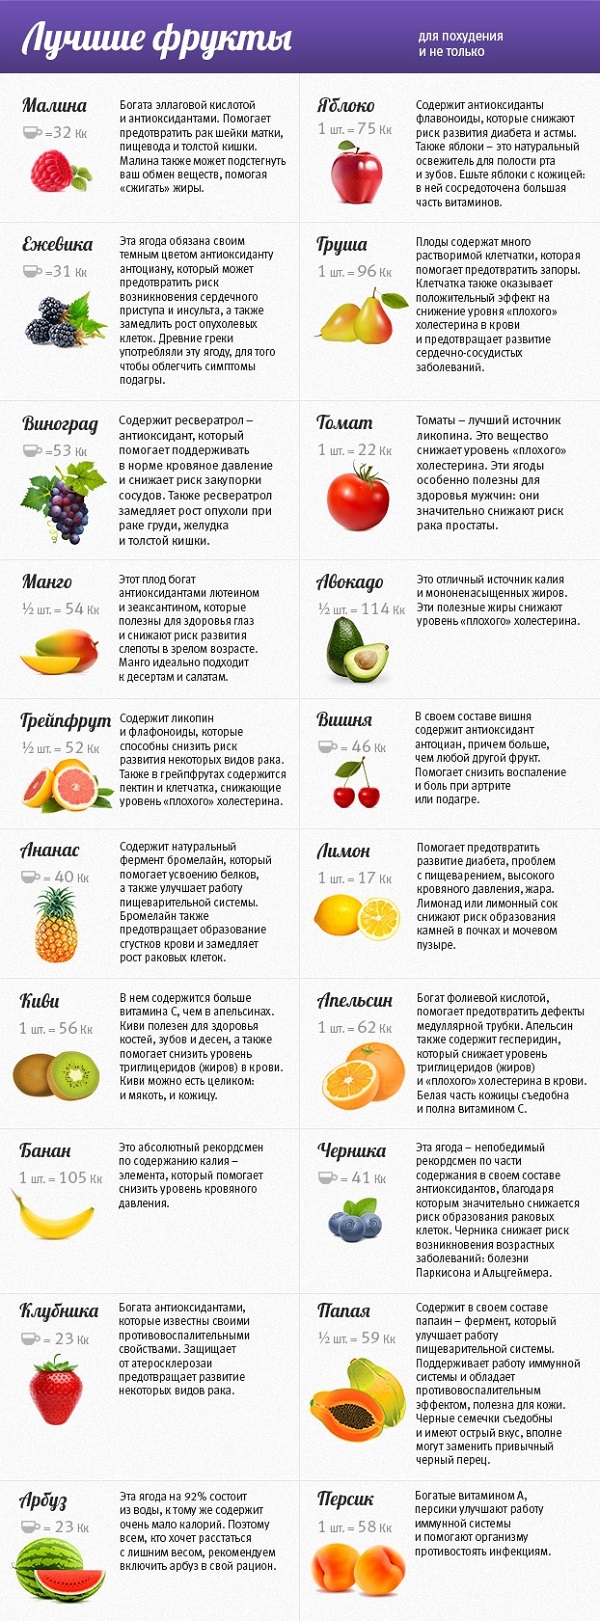 какие фрукты кушают при диете